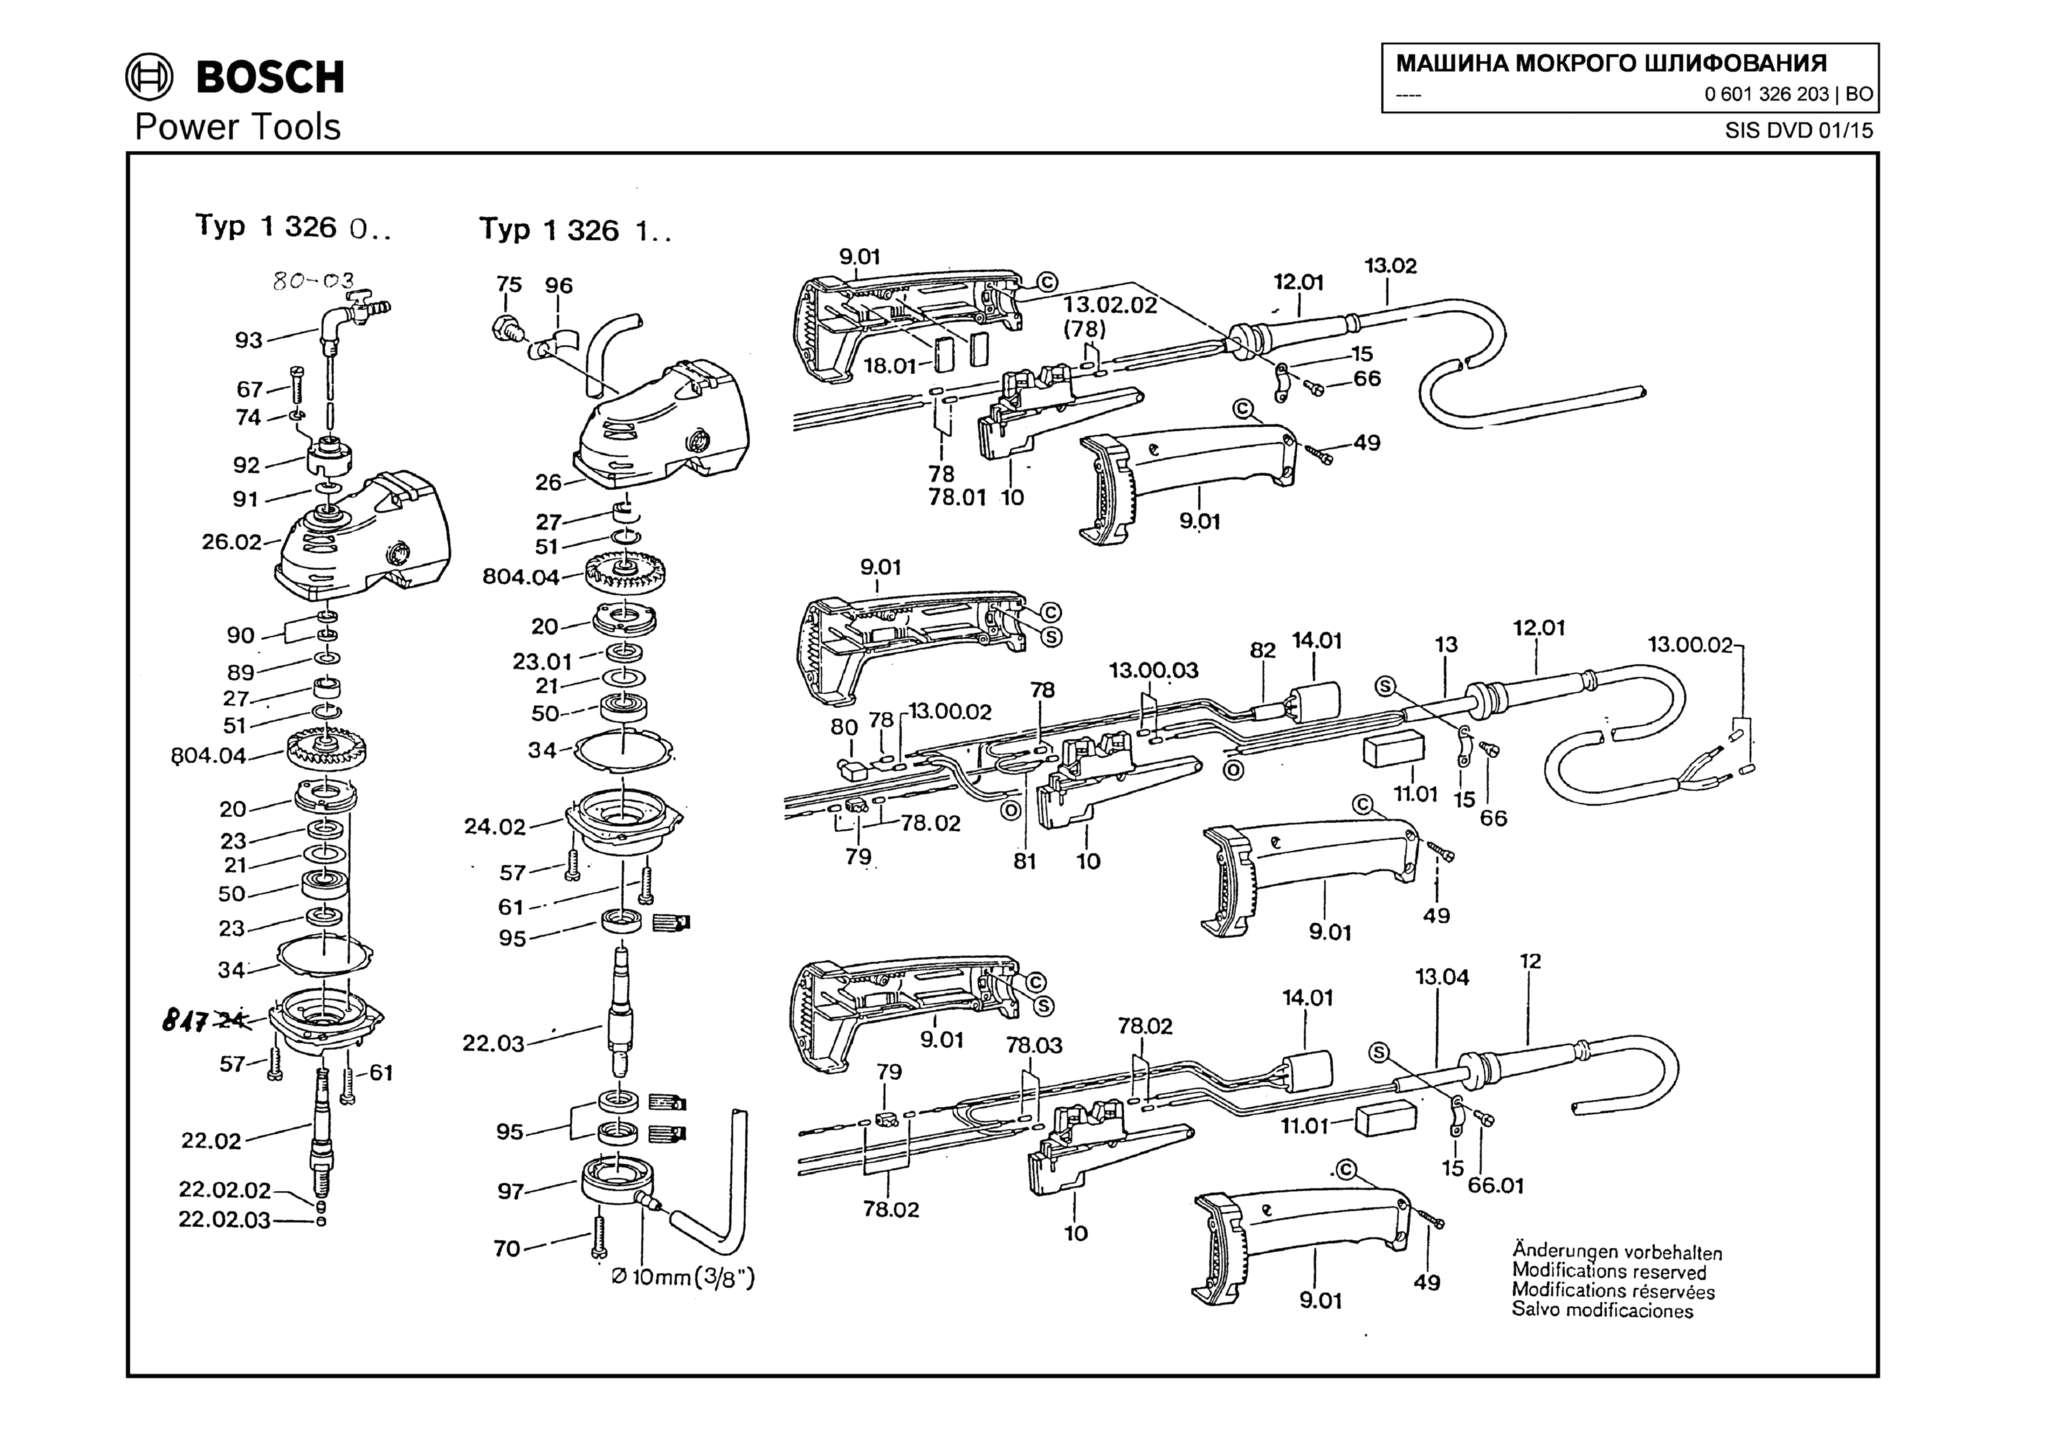 Запчасти, схема и деталировка Bosch (ТИП 0601326203)